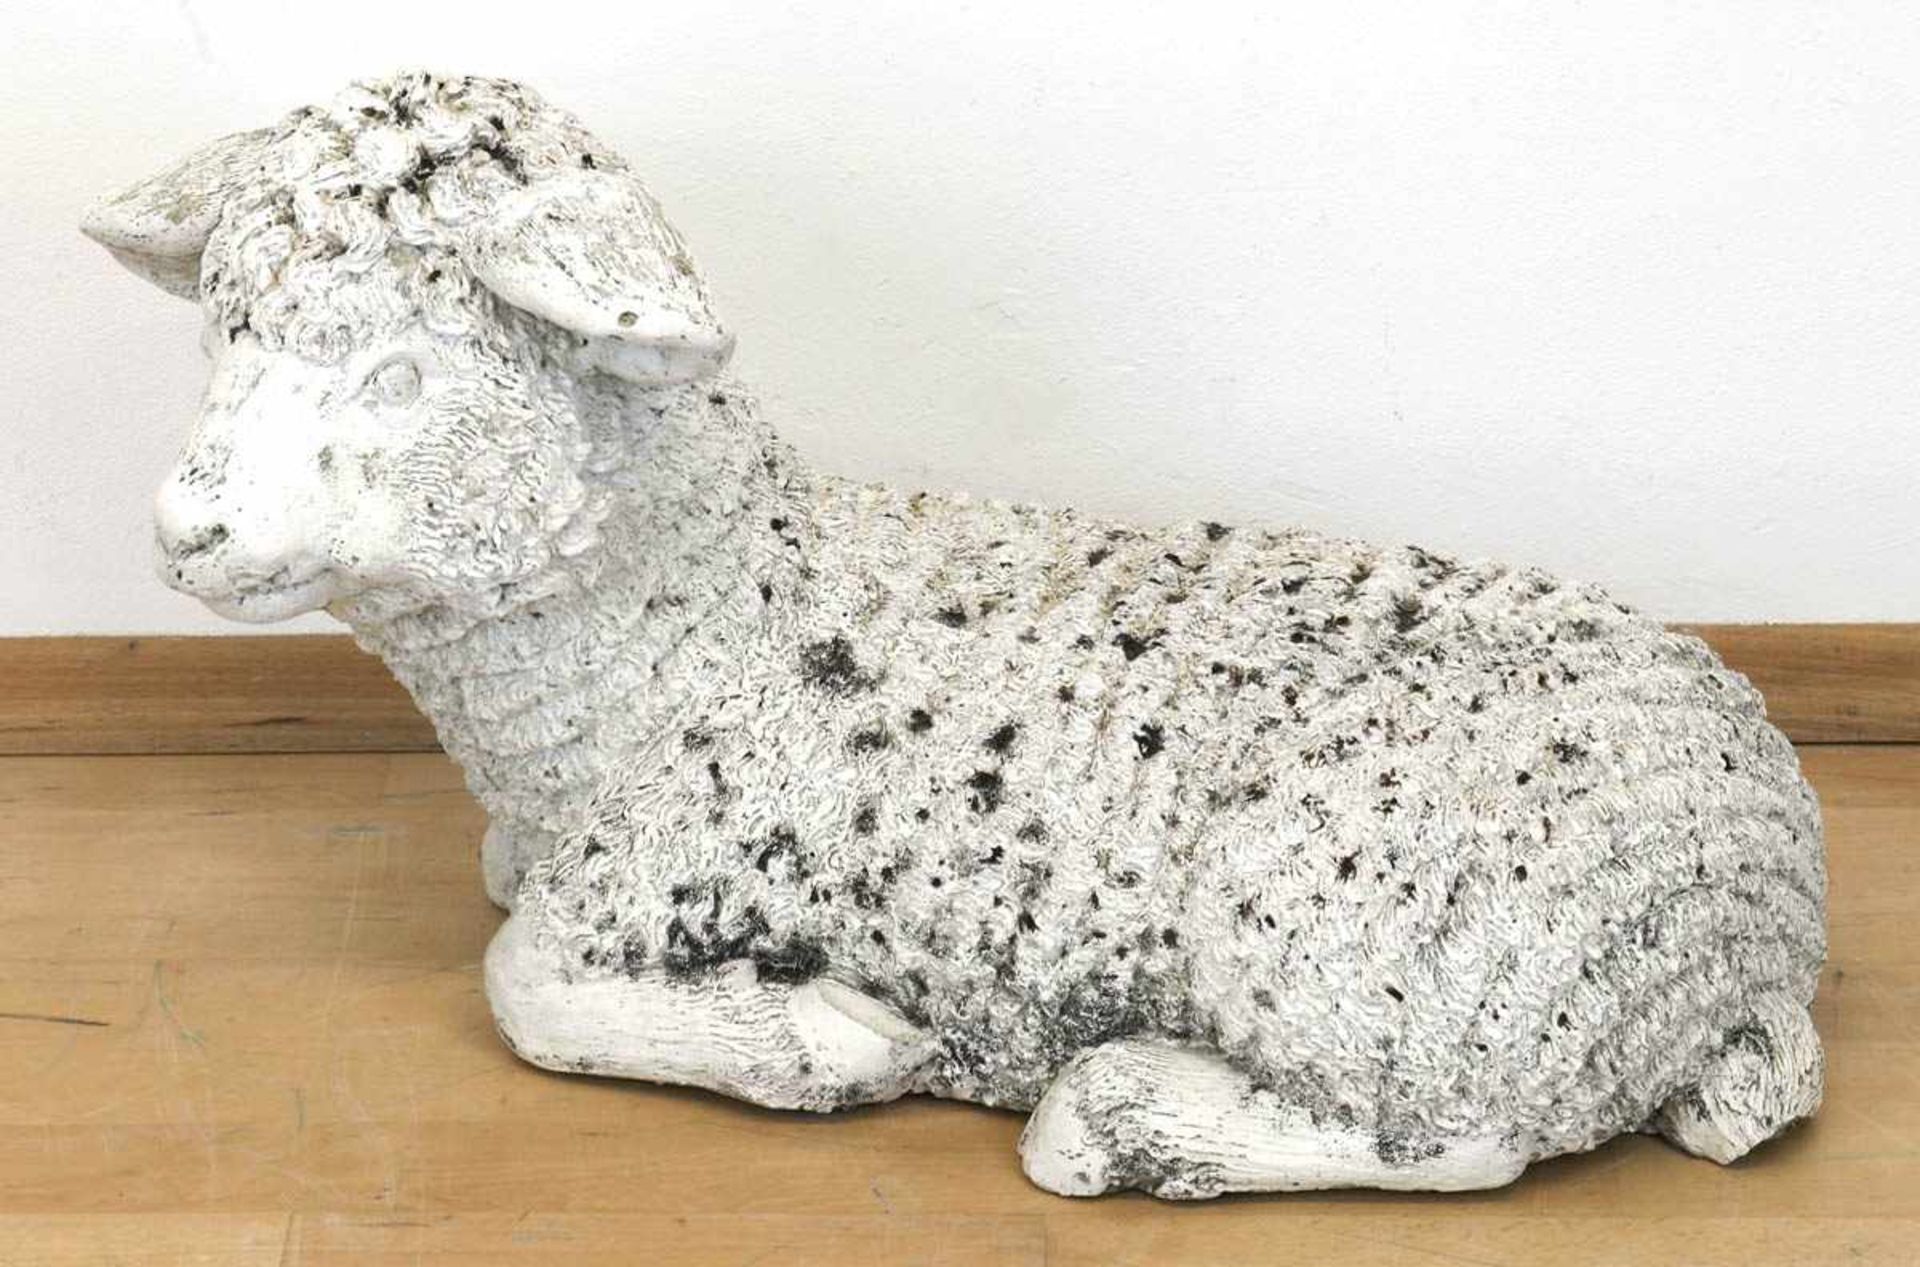 Gartenfigur "Liegendes Schaf", um 1975, Steinguß, wetterfest, Witterungsspuren, H. 33 cm,L. 57 cm